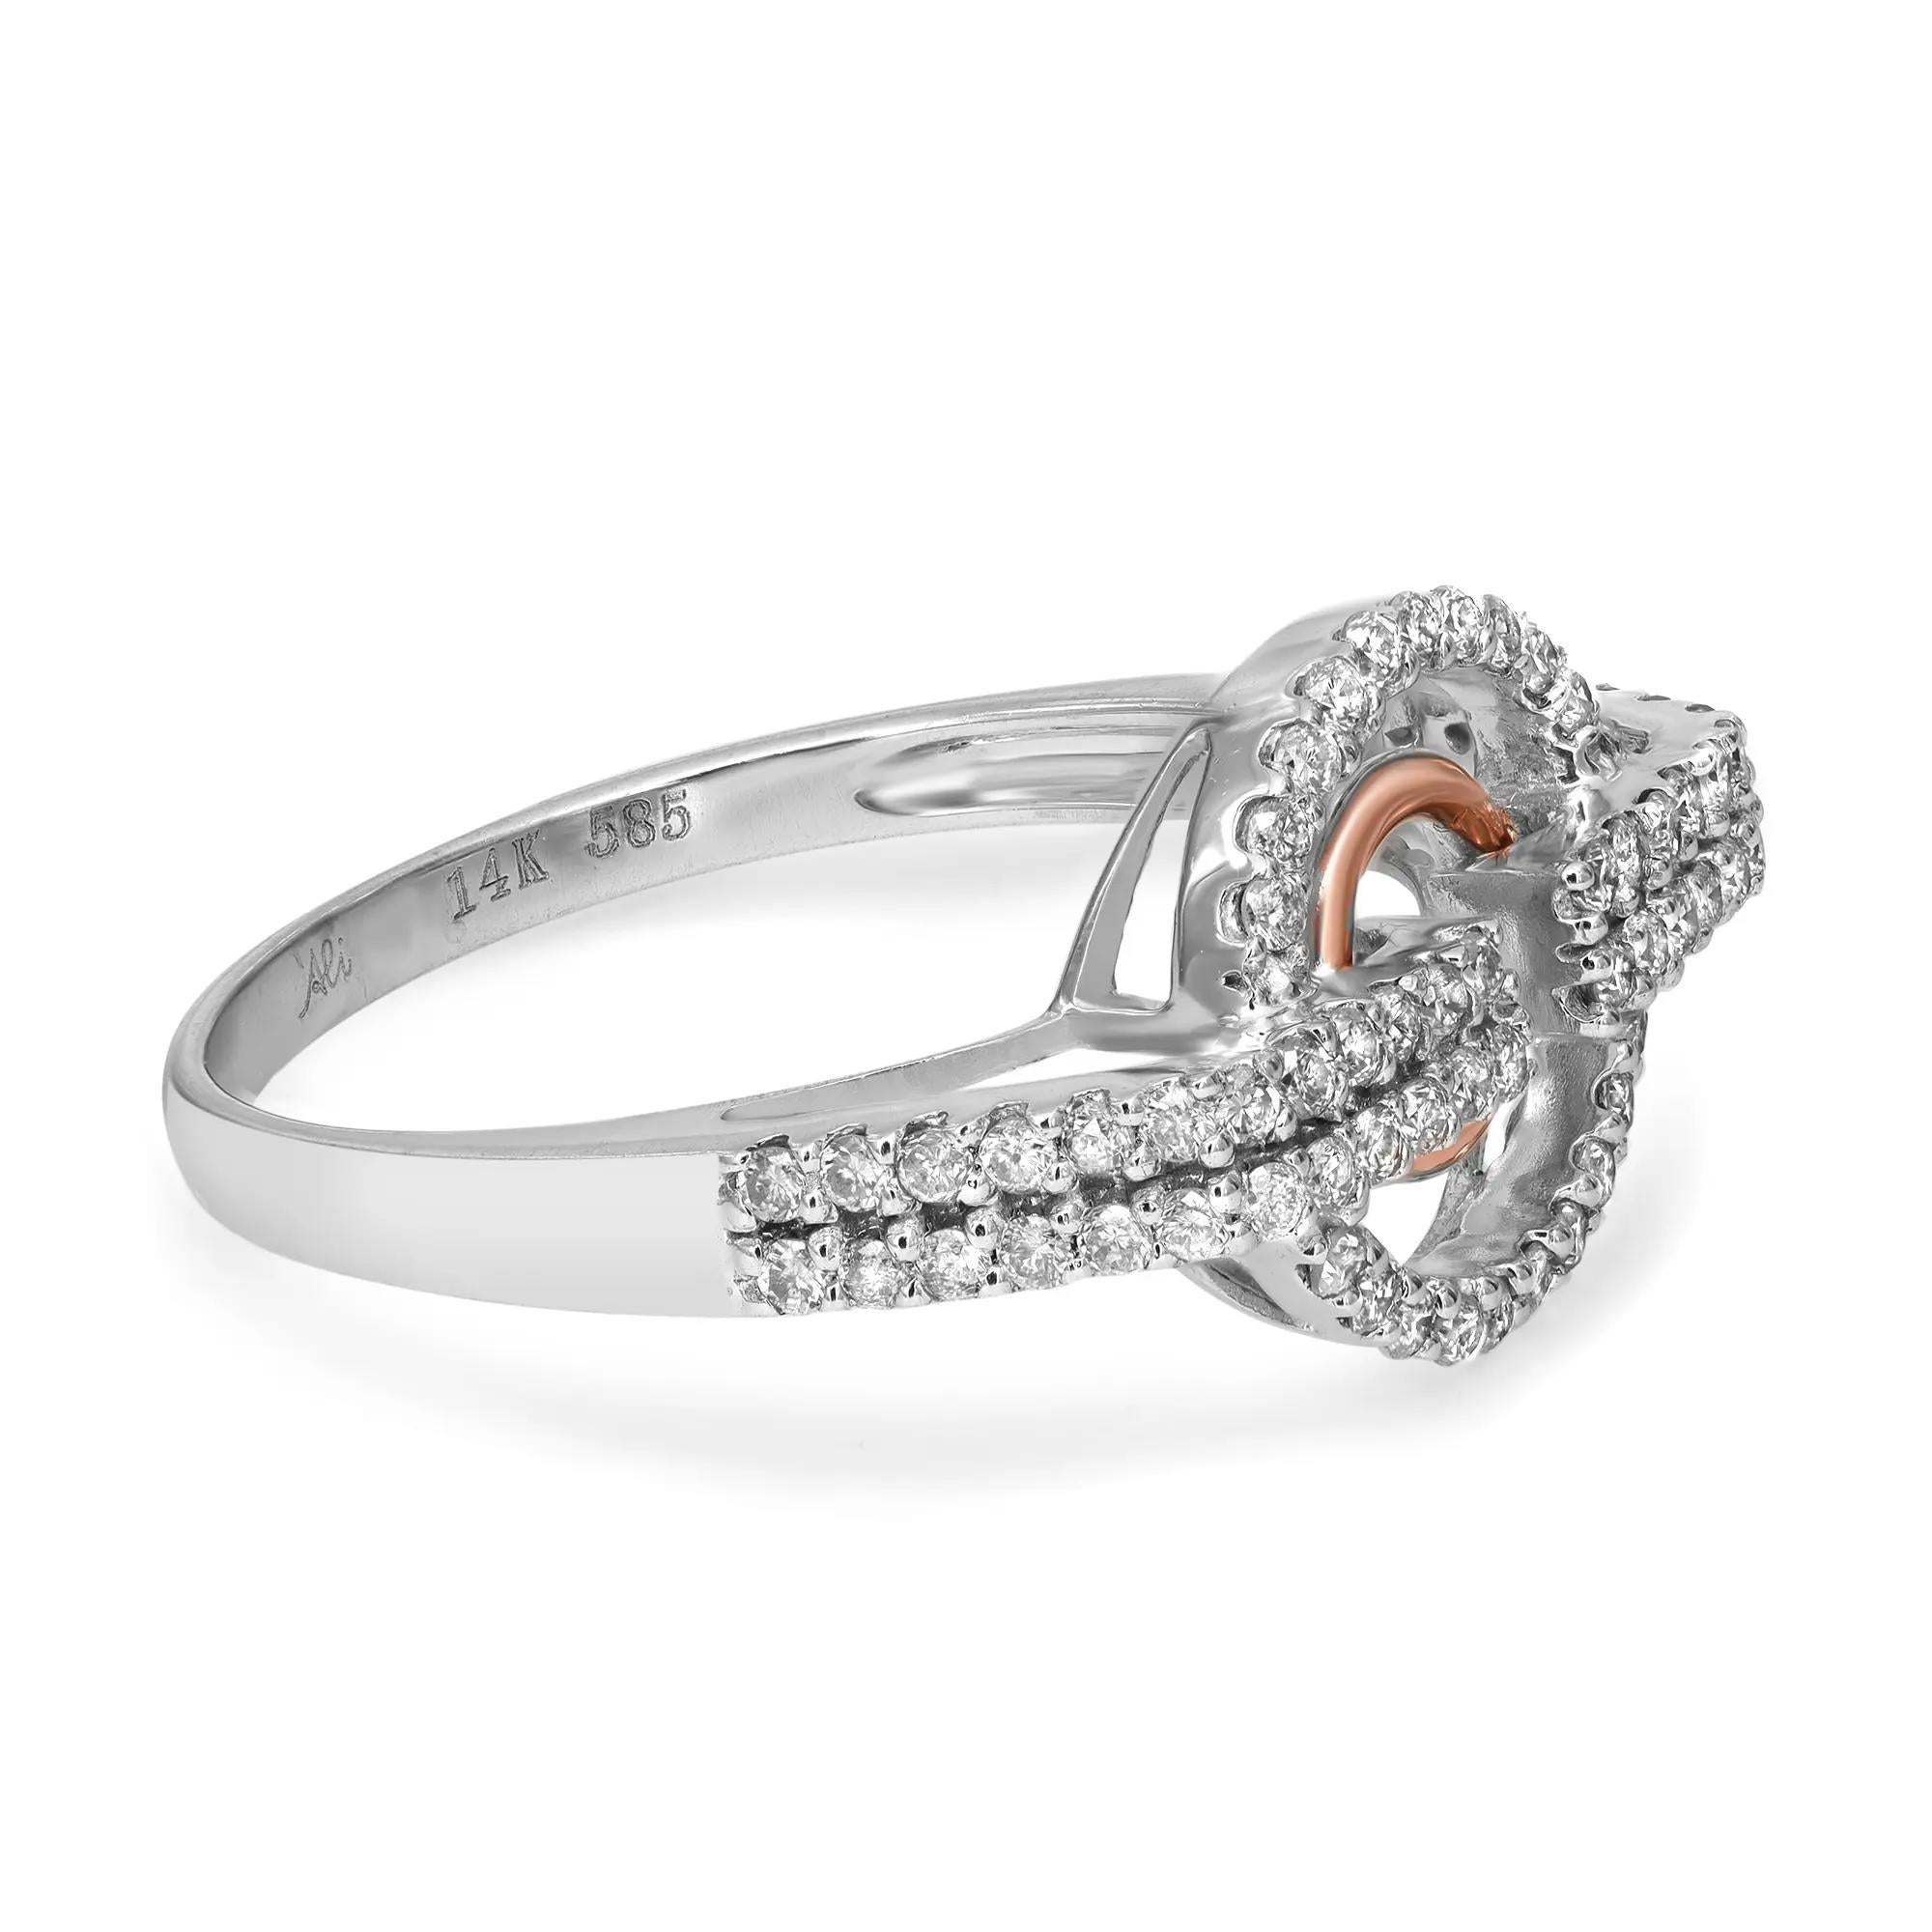 Schicker und trendiger Diamantring für Damen. Dieser Ring ist mit runden Diamanten im Brillantschliff besetzt, die in einem kreisförmigen Muster angeordnet sind. Gefertigt aus hochglanzpoliertem 14-karätigem Weißgold mit einem Ring aus 14-karätigem